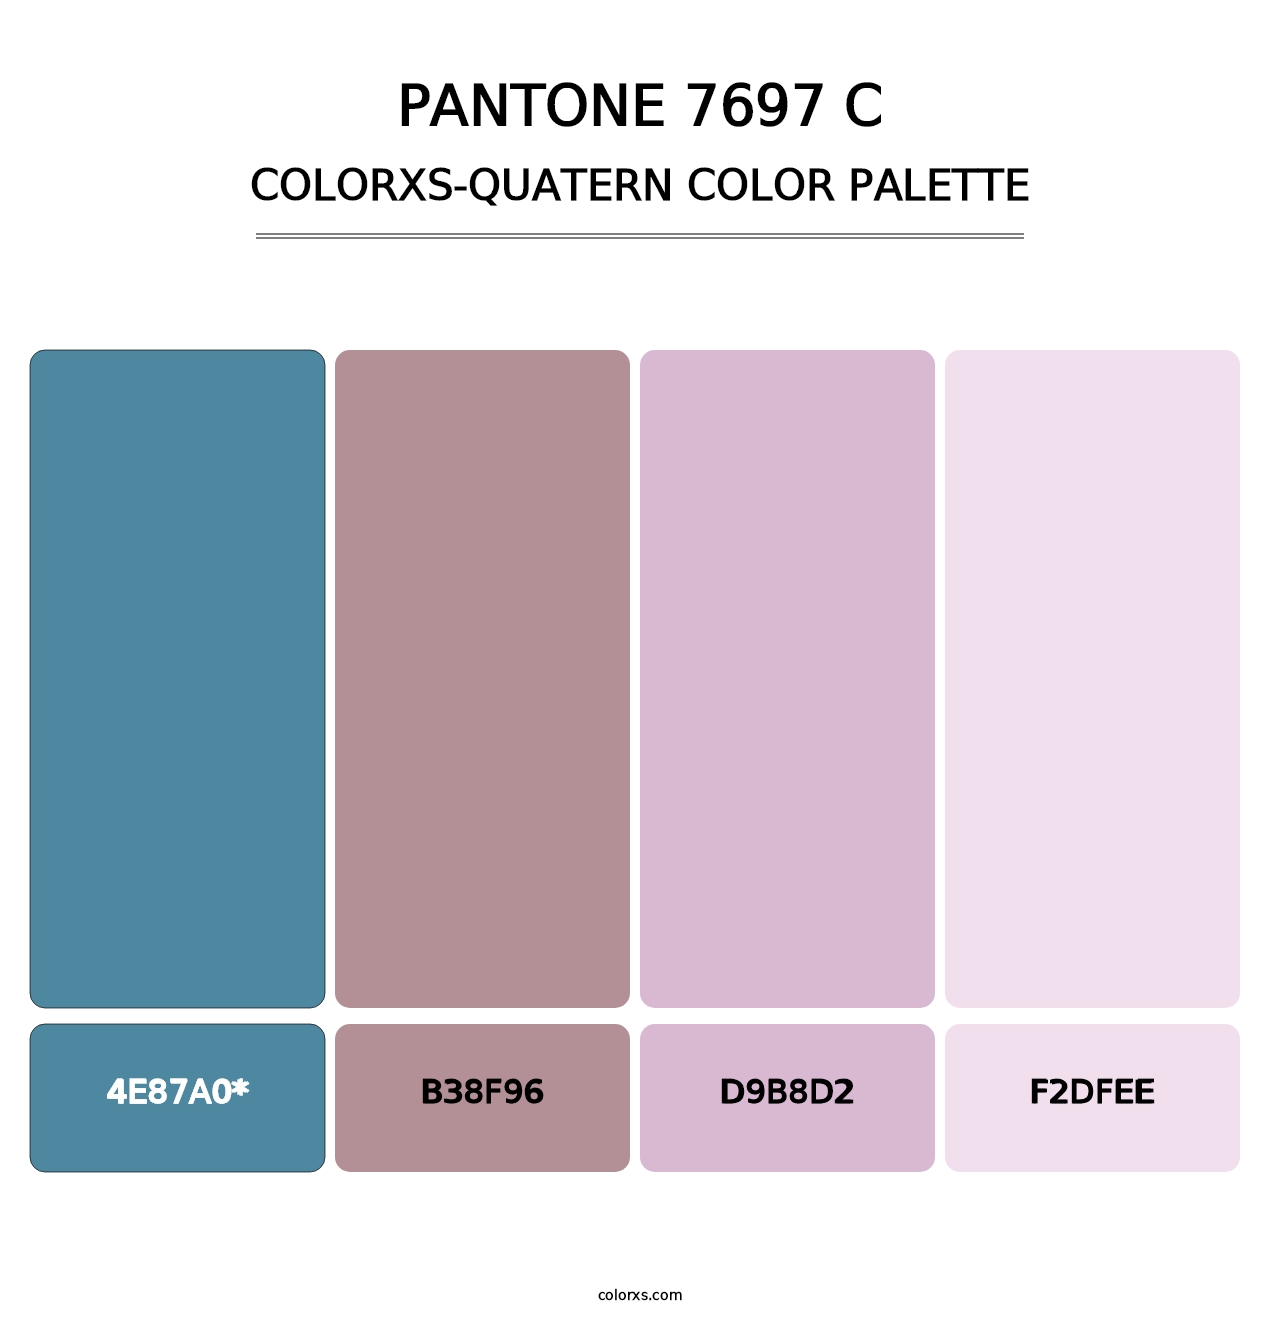 PANTONE 7697 C - Colorxs Quad Palette